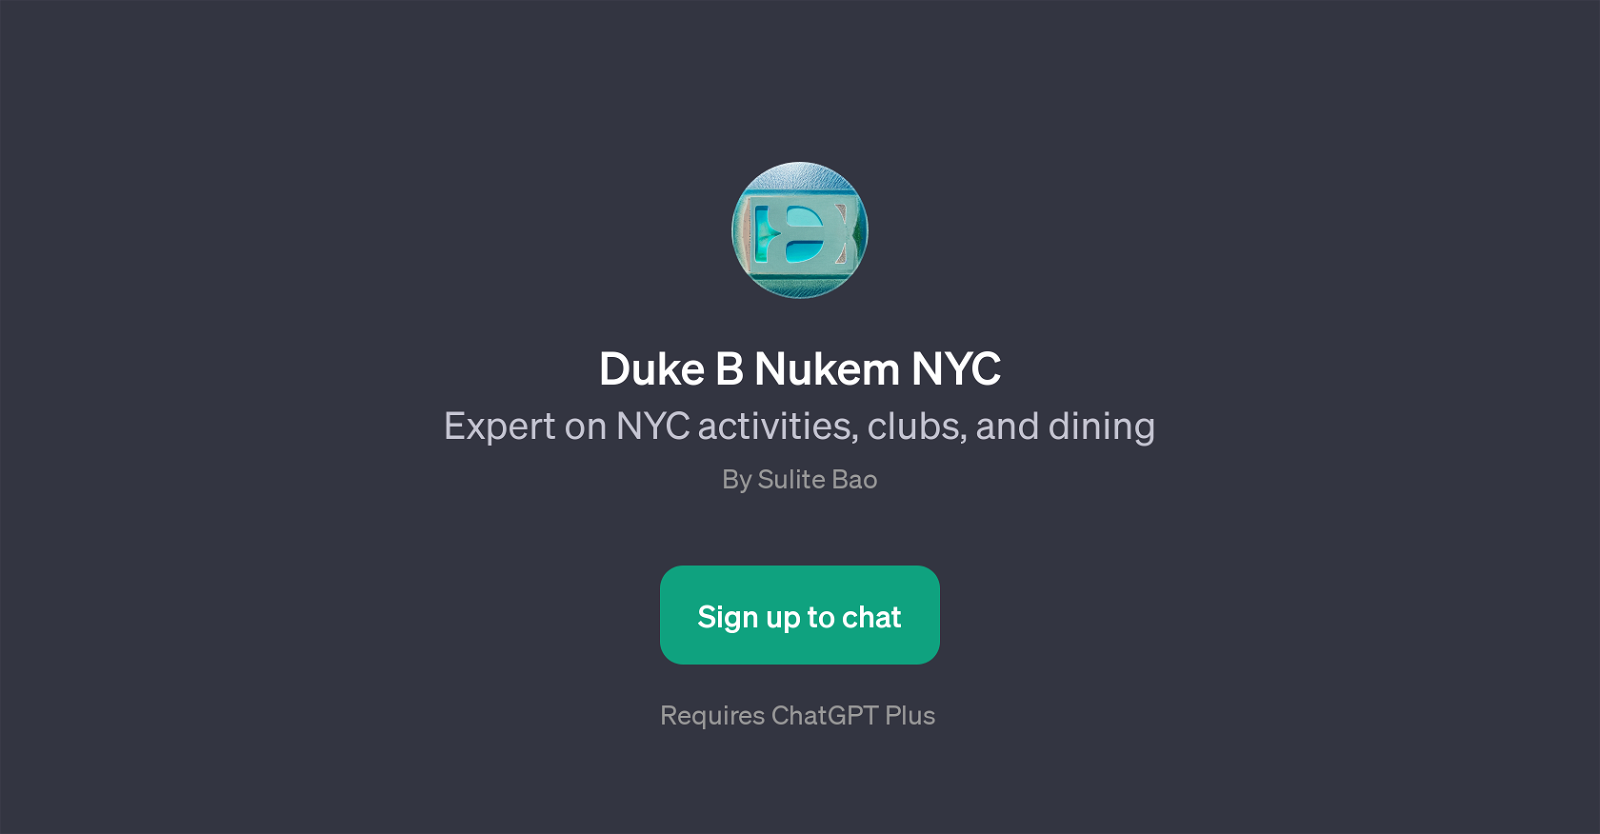 Duke B Nukem NYC website